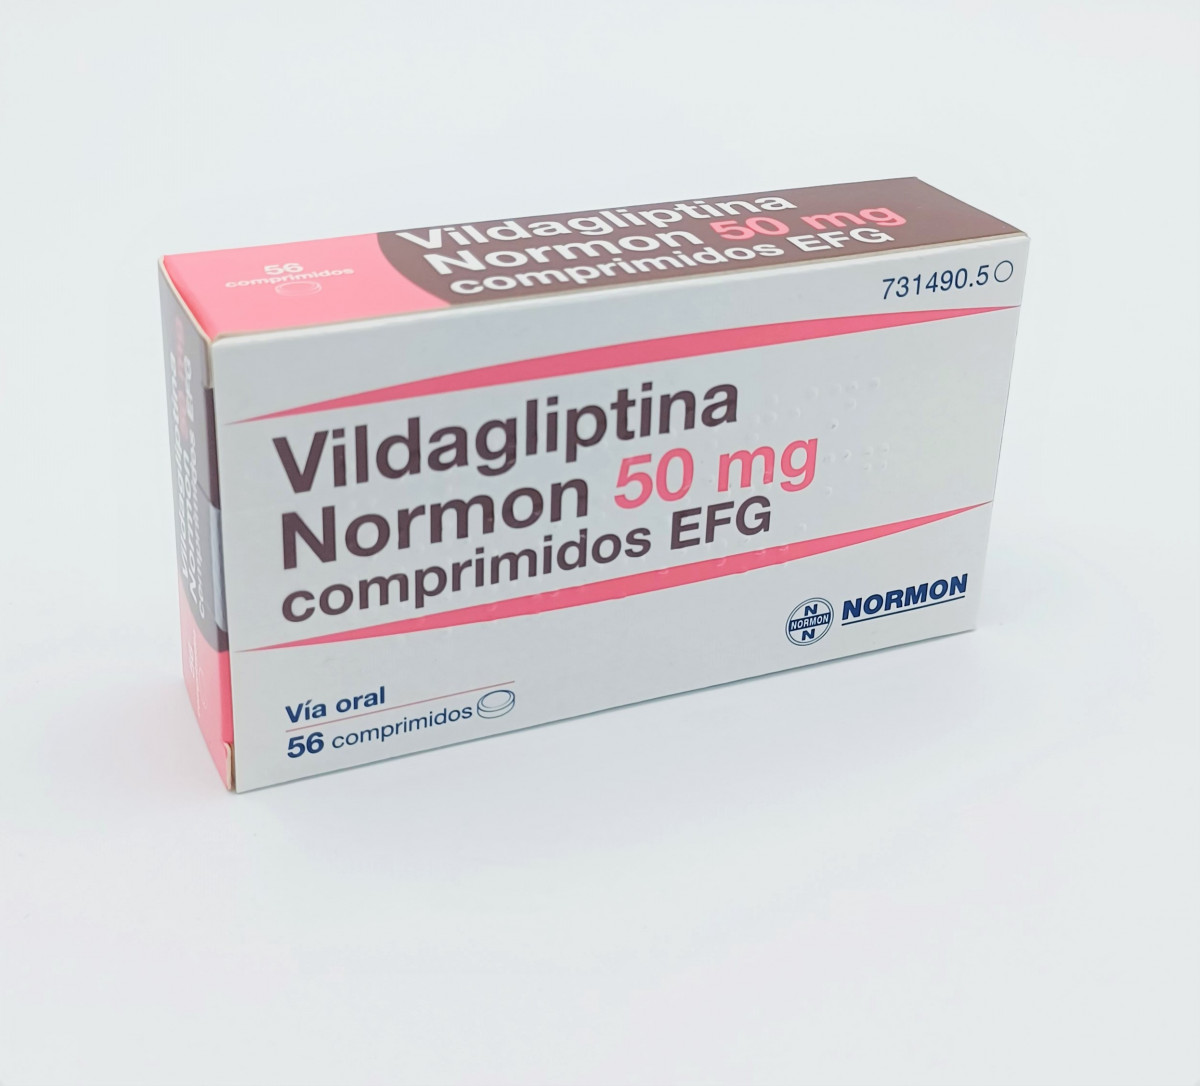 VILDAGLIPTINA NORMON 50 MG COMPRIMIDOS EFG 56 comprimidos fotografía del envase.